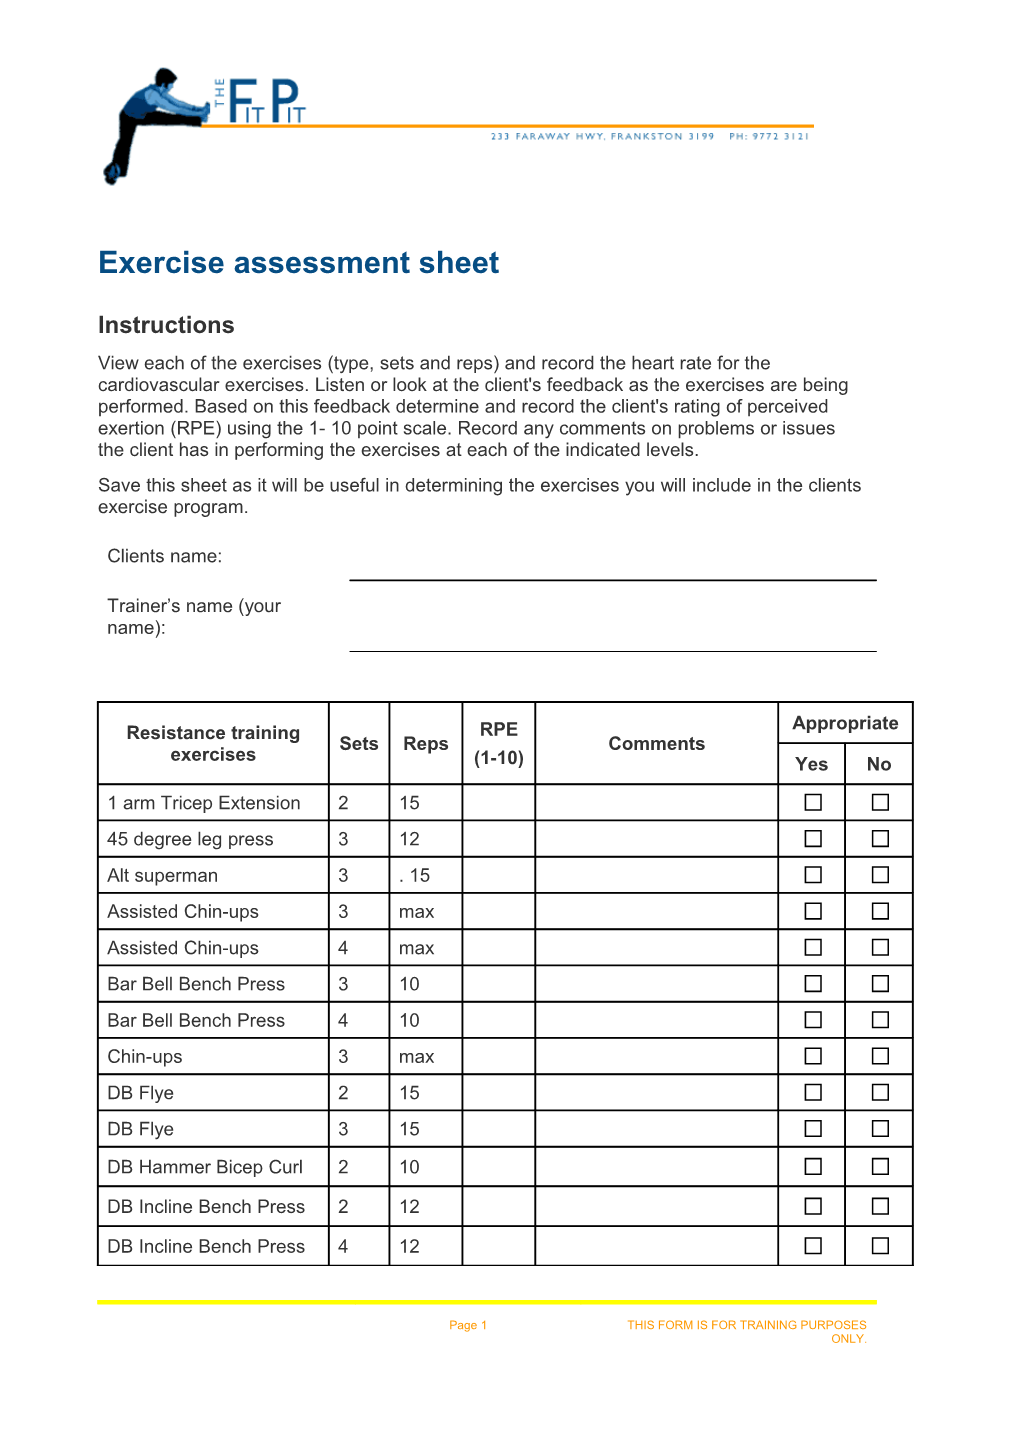 Exercise Assessment Sheet